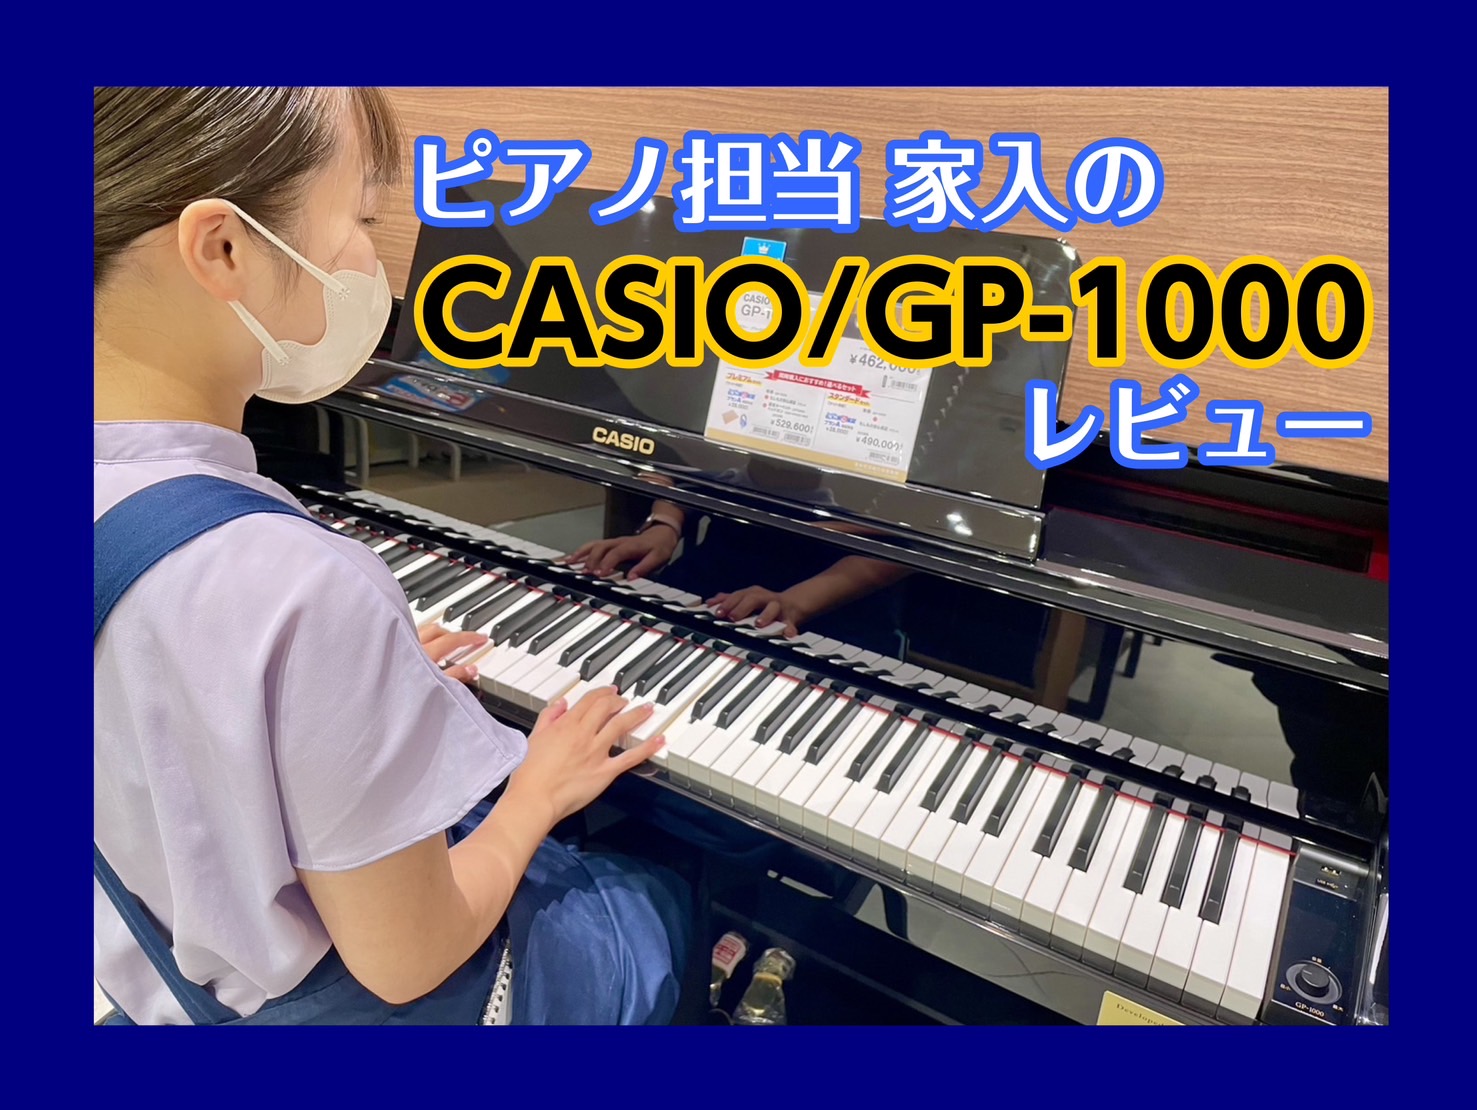 ピアノ担当 家入による、GP-1000レビュー！ 皆さんこんにちは✨ピアノ担当家入(いえいり)です。今回、家入イチオシの電子ピアノ「GP-1000」をレビューしていきたいと思います！ GP-1000はハイブリットピアノと呼ばれアコースティックピアノのハンマーアクションが搭載された電子ピアノになってい […]